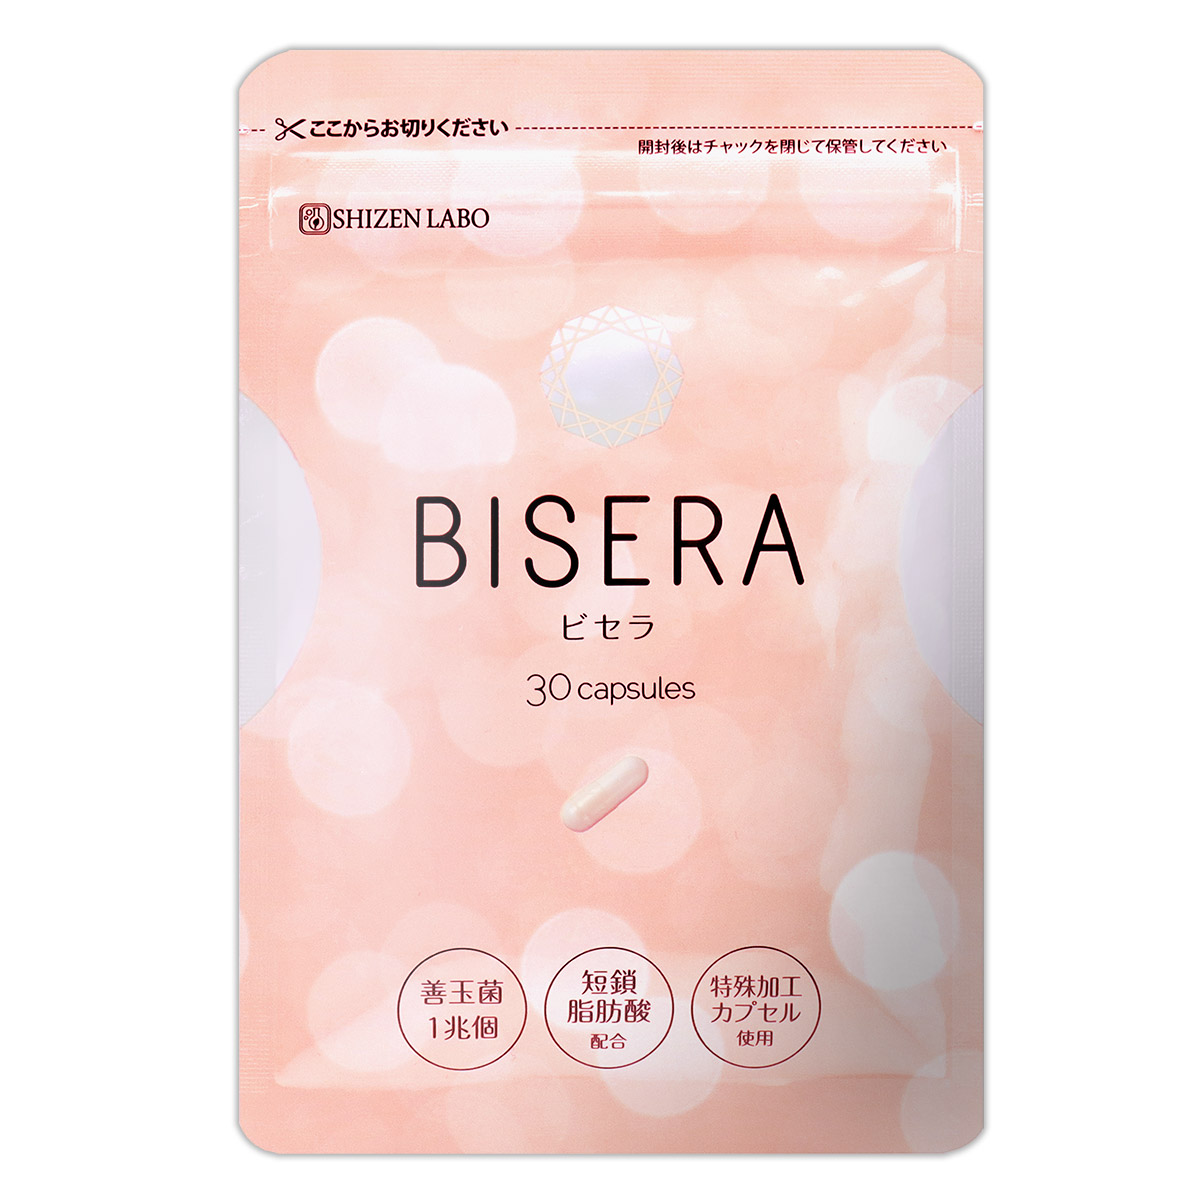 2袋セット 】 ビセラ BISERA 11.25g ( 375mg×30粒 ) ヘルスアップ サプリメント サプリ メール便送料無料SPL